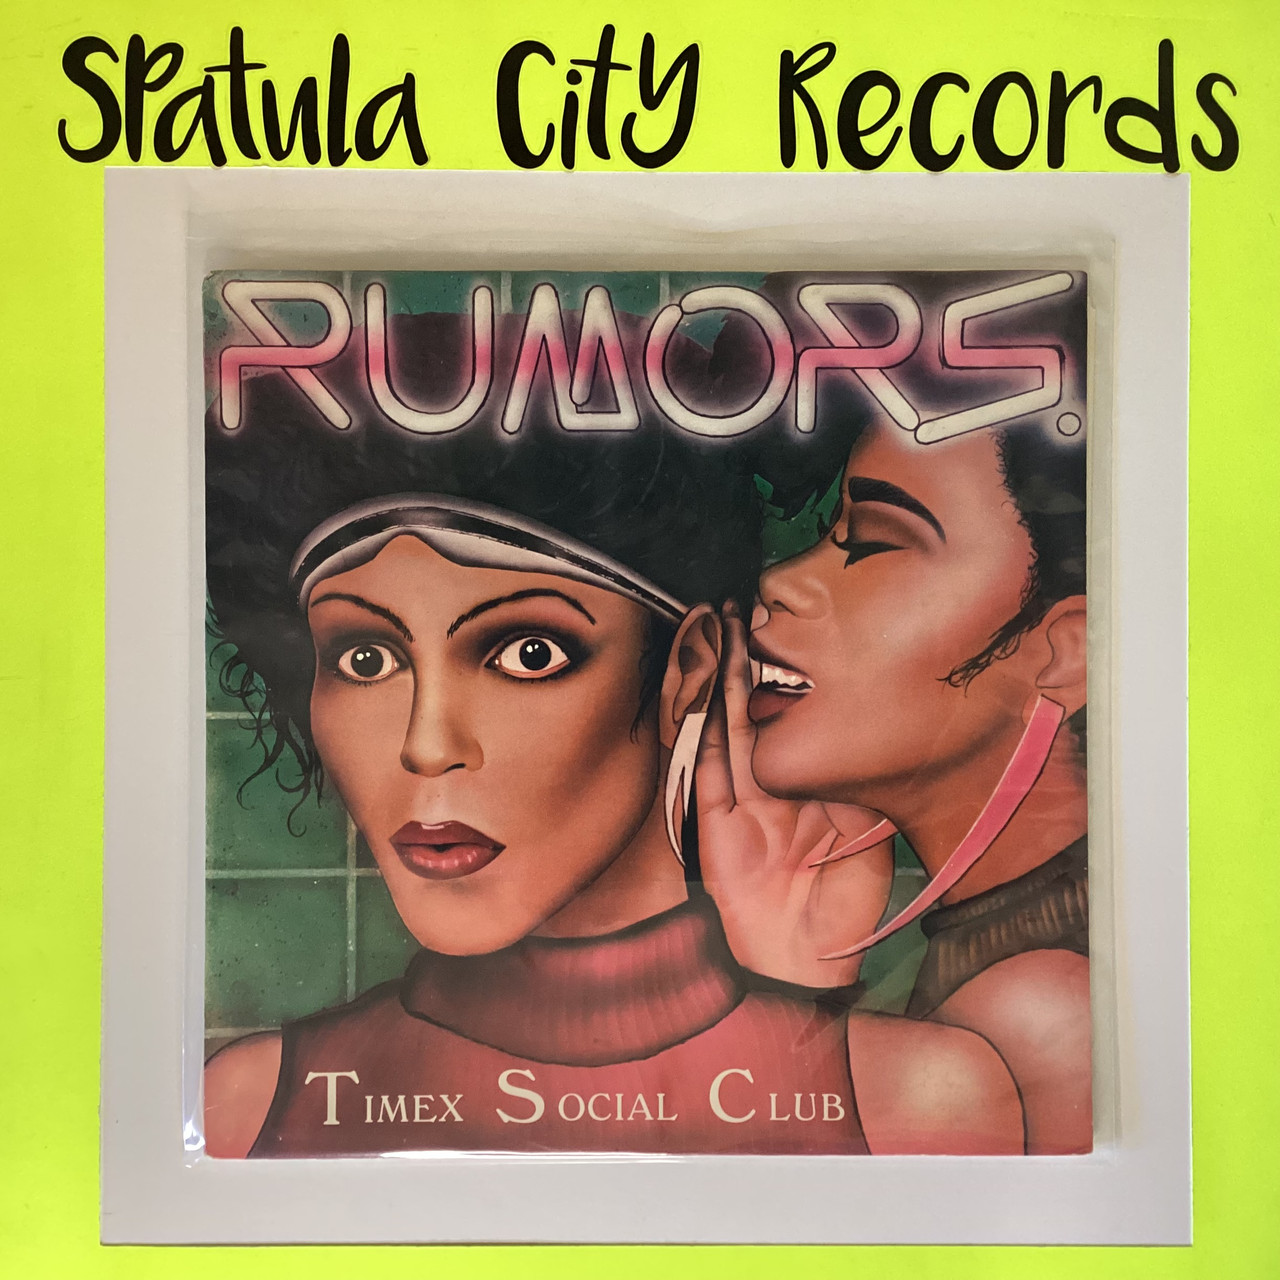 Timex Social Club - Rumors - 12" single vinyl record album LP